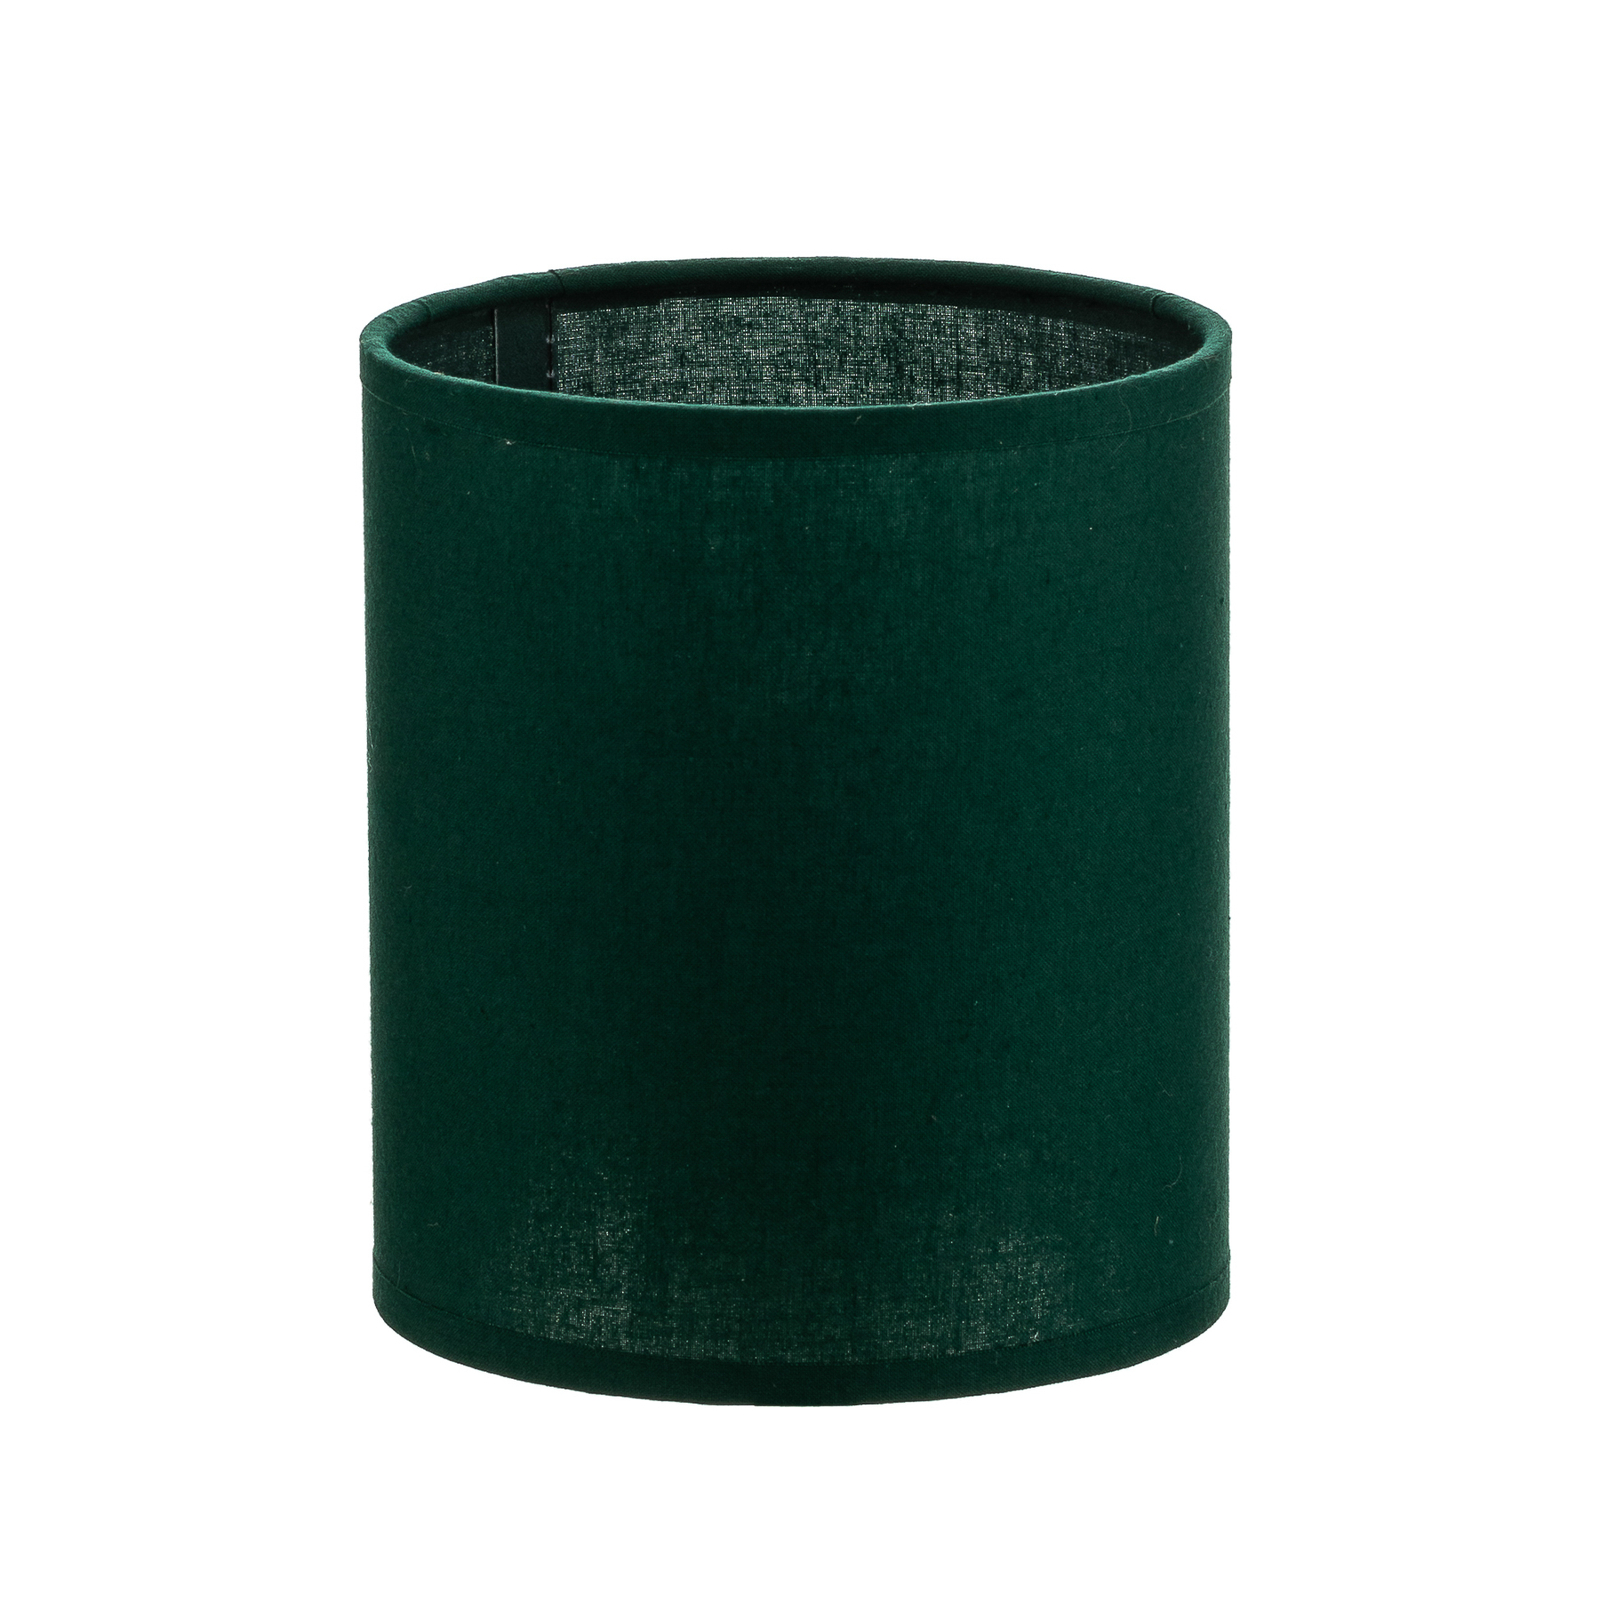 Klosz lampy Roller, zielony Ø 13 cm wysokość 15 cm